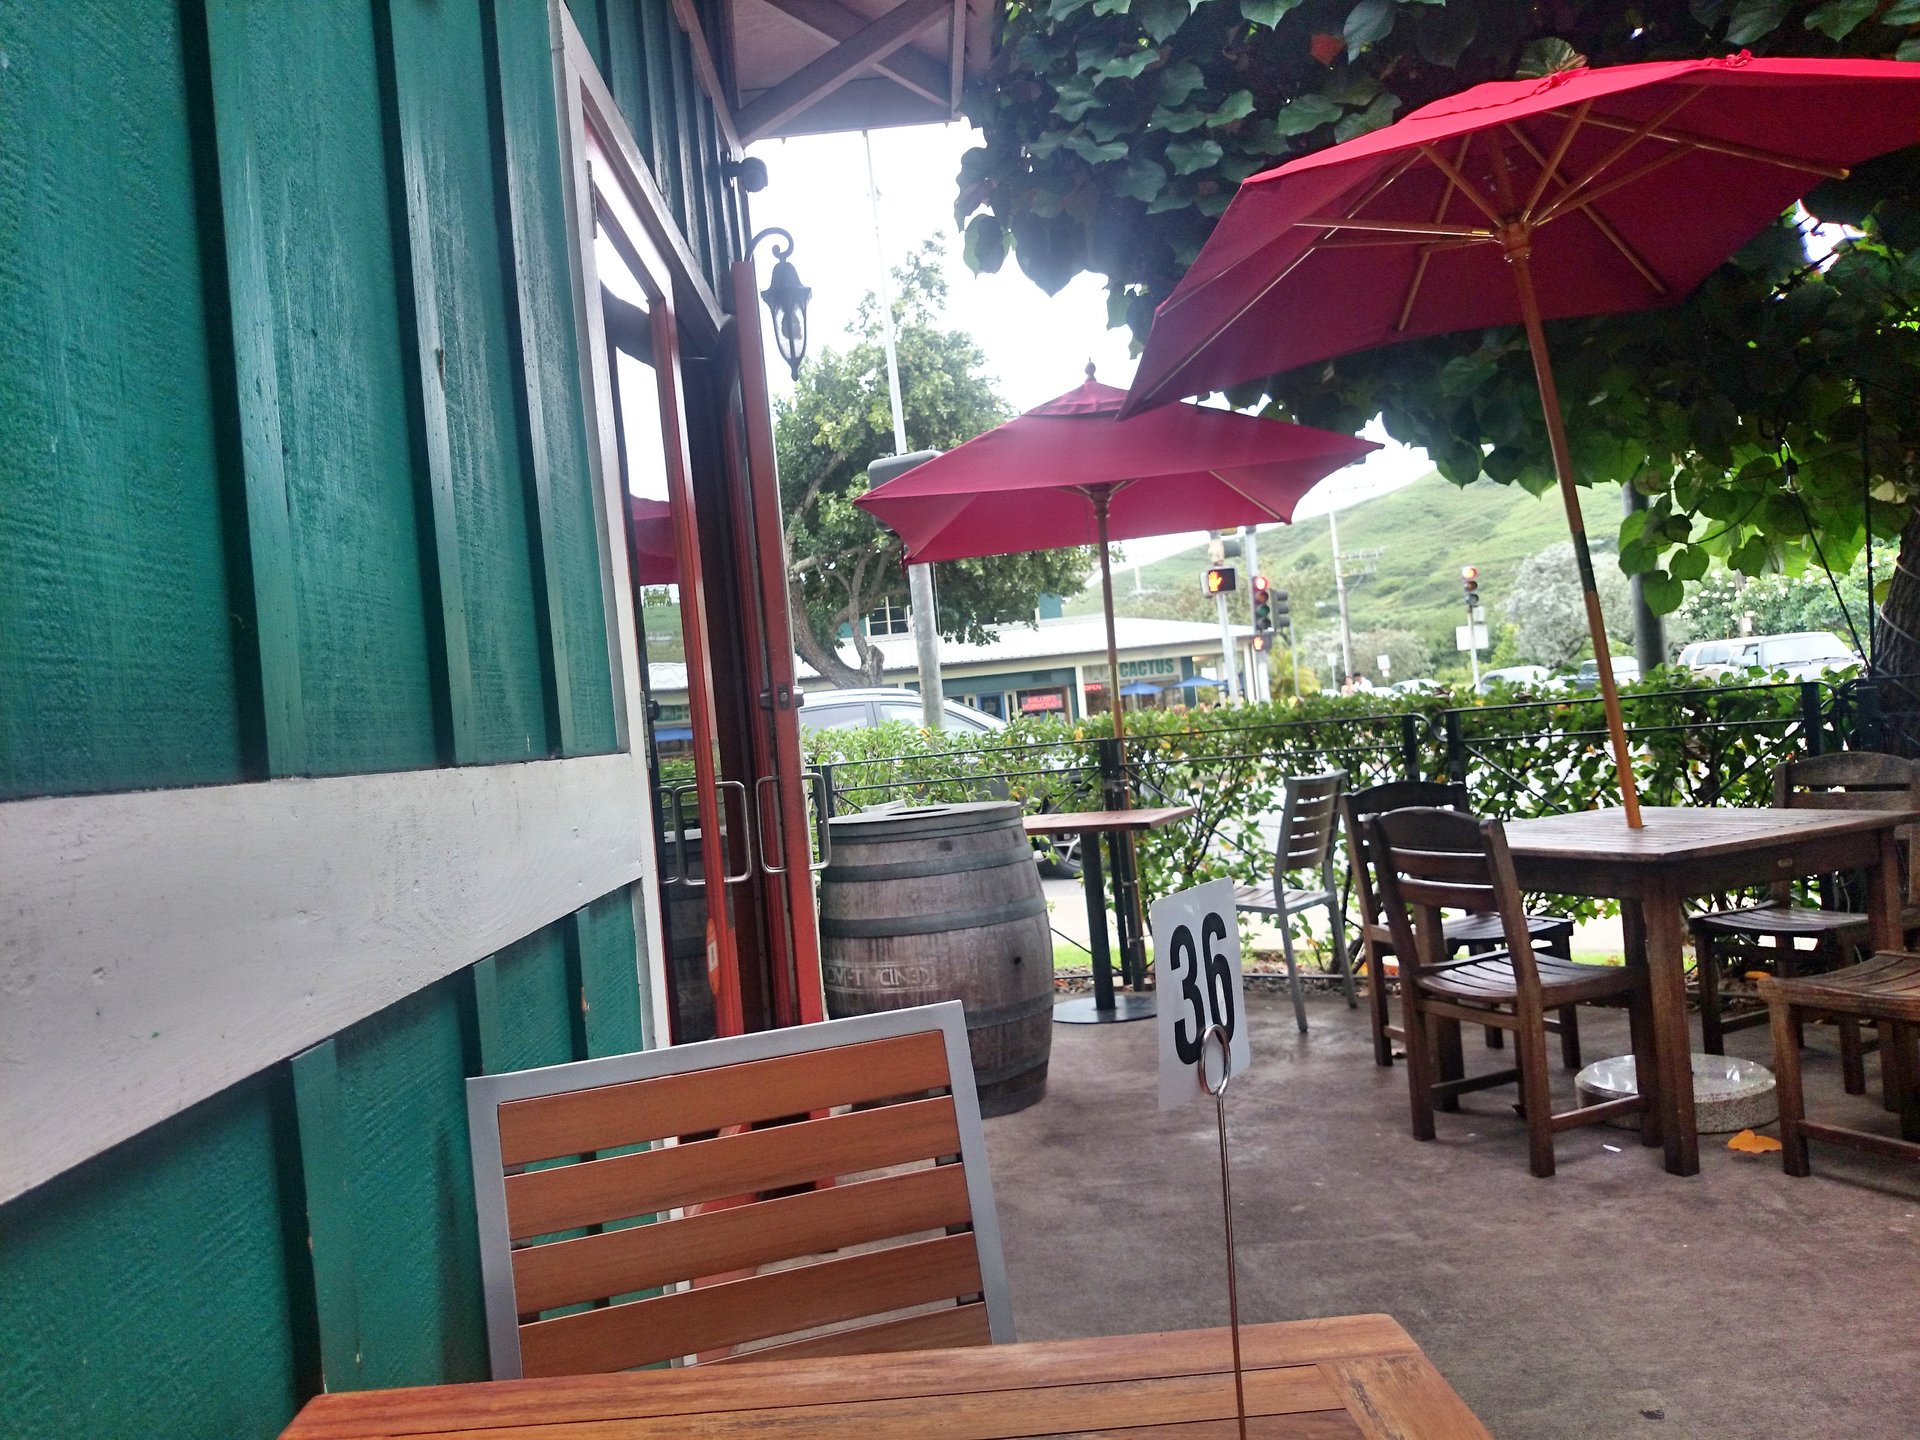 ハワイ旅行カイルアタウンのローカル御用達カフェならカラパワイカフェ&デリ。テイクアウトok 